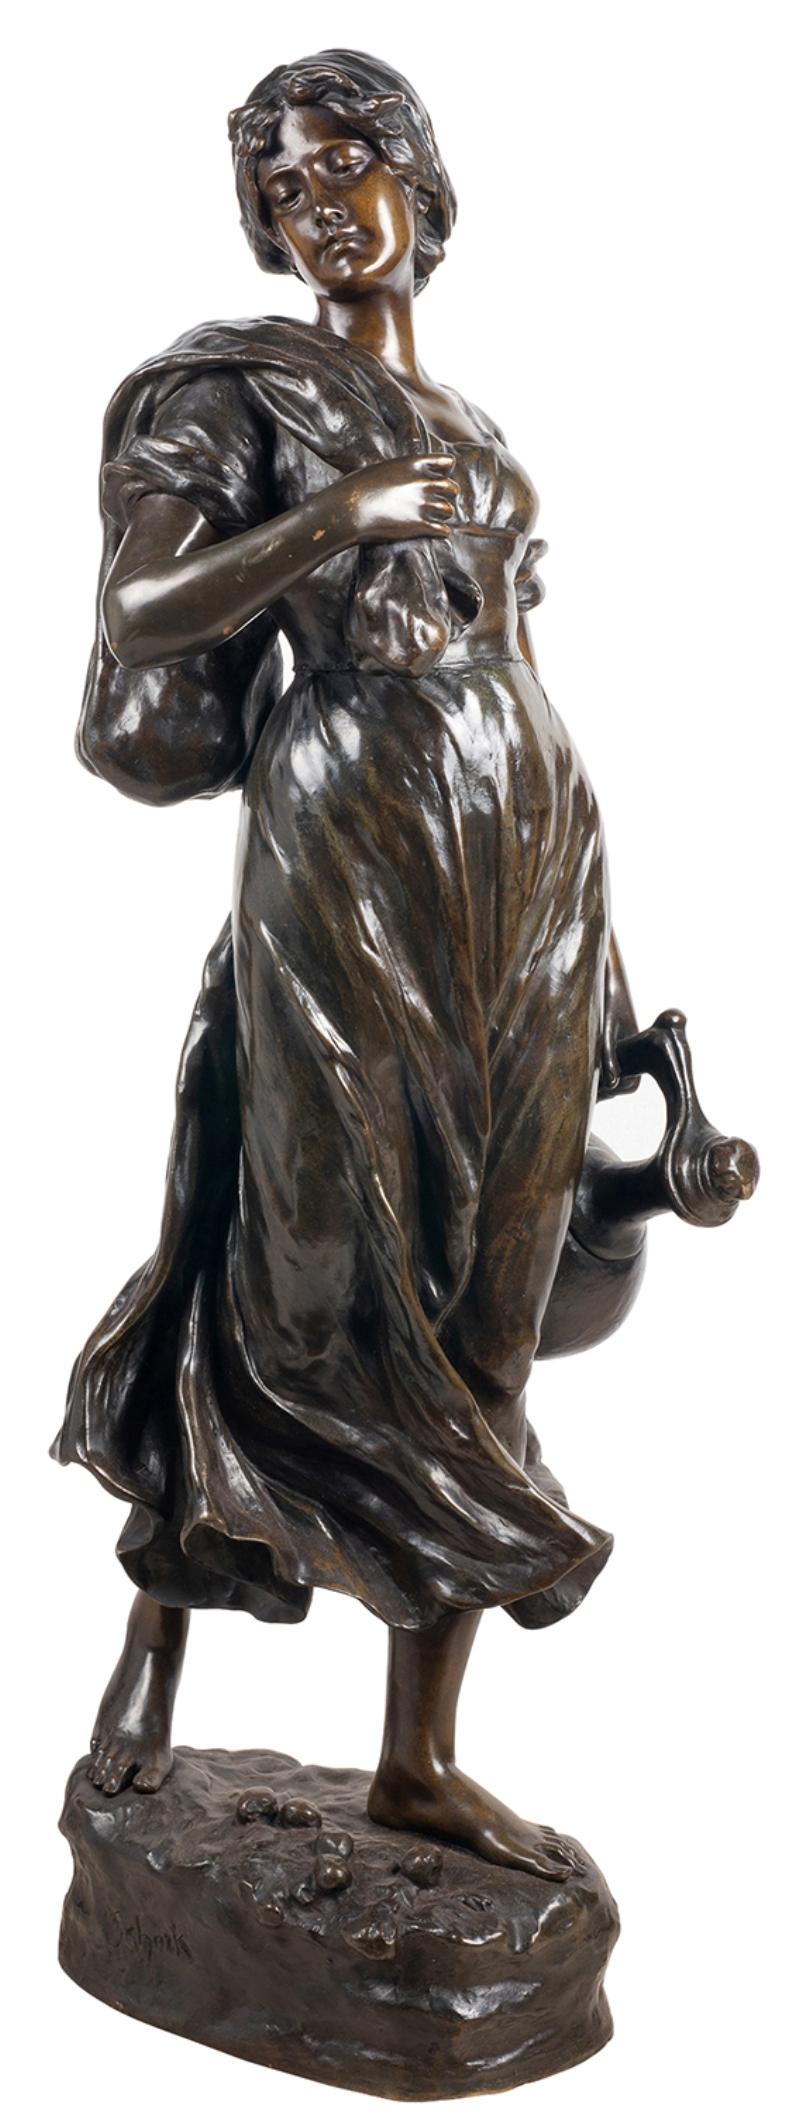 Eine bezaubernde patinierte Bronzestatue aus dem späten 19. Jahrhundert, die ein hübsches junges Mädchen darstellt, das einen Wasserkrug und einen Sack trägt. 
Unterzeichnet; Hans Schork, Österreicher, 1849.